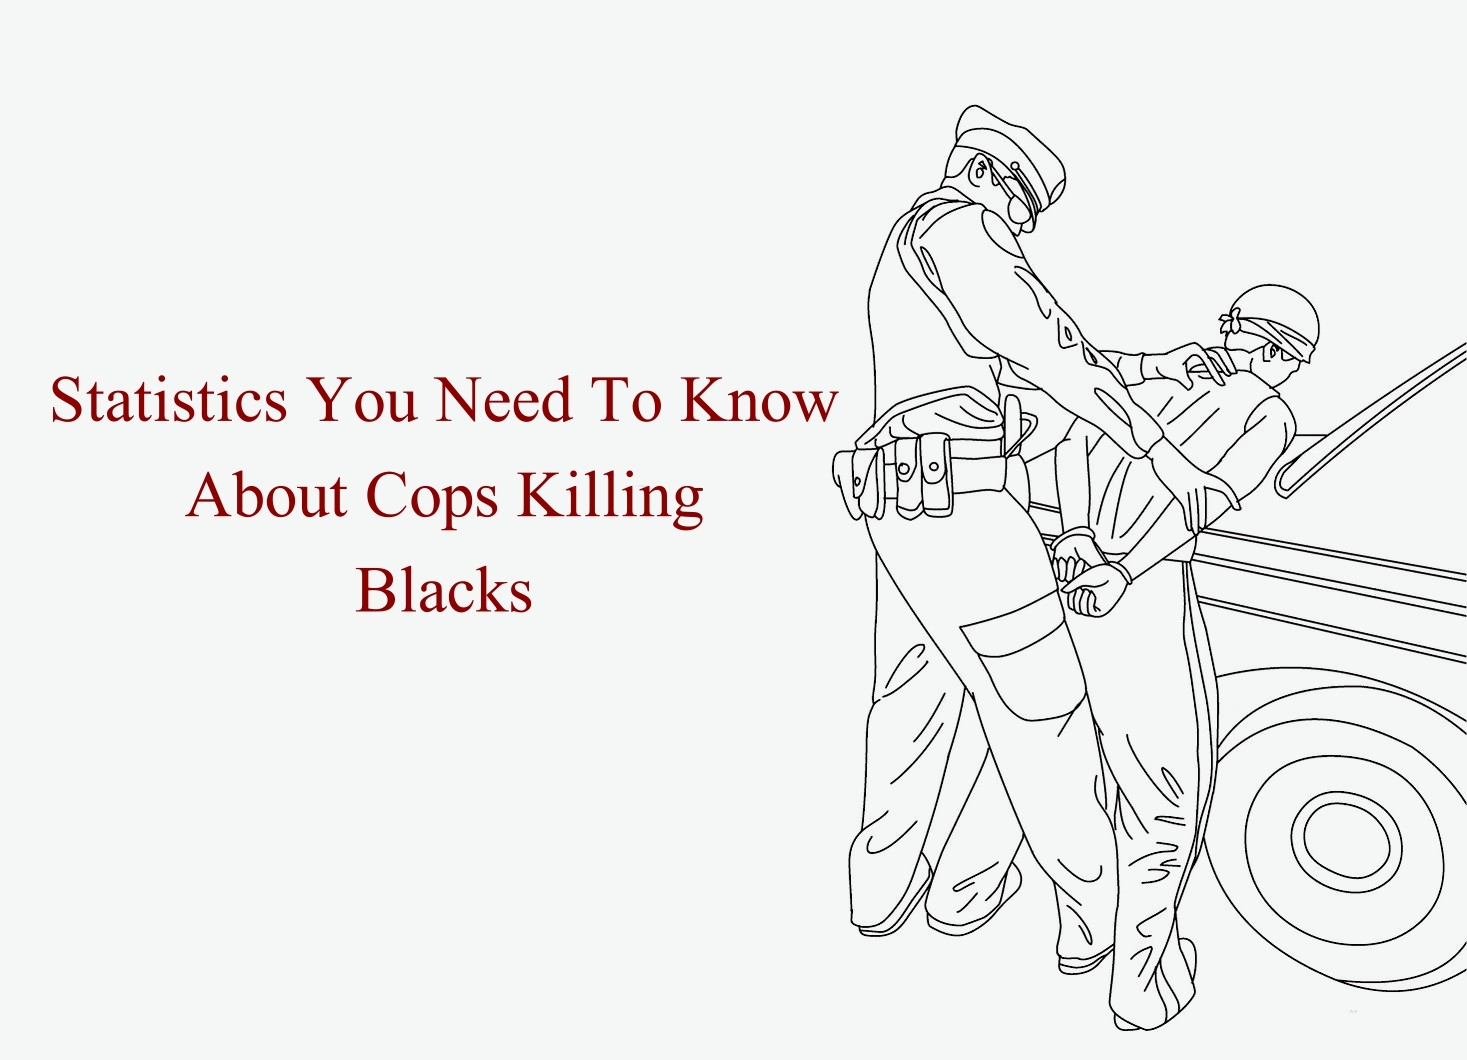 About Cops Killing Blacks